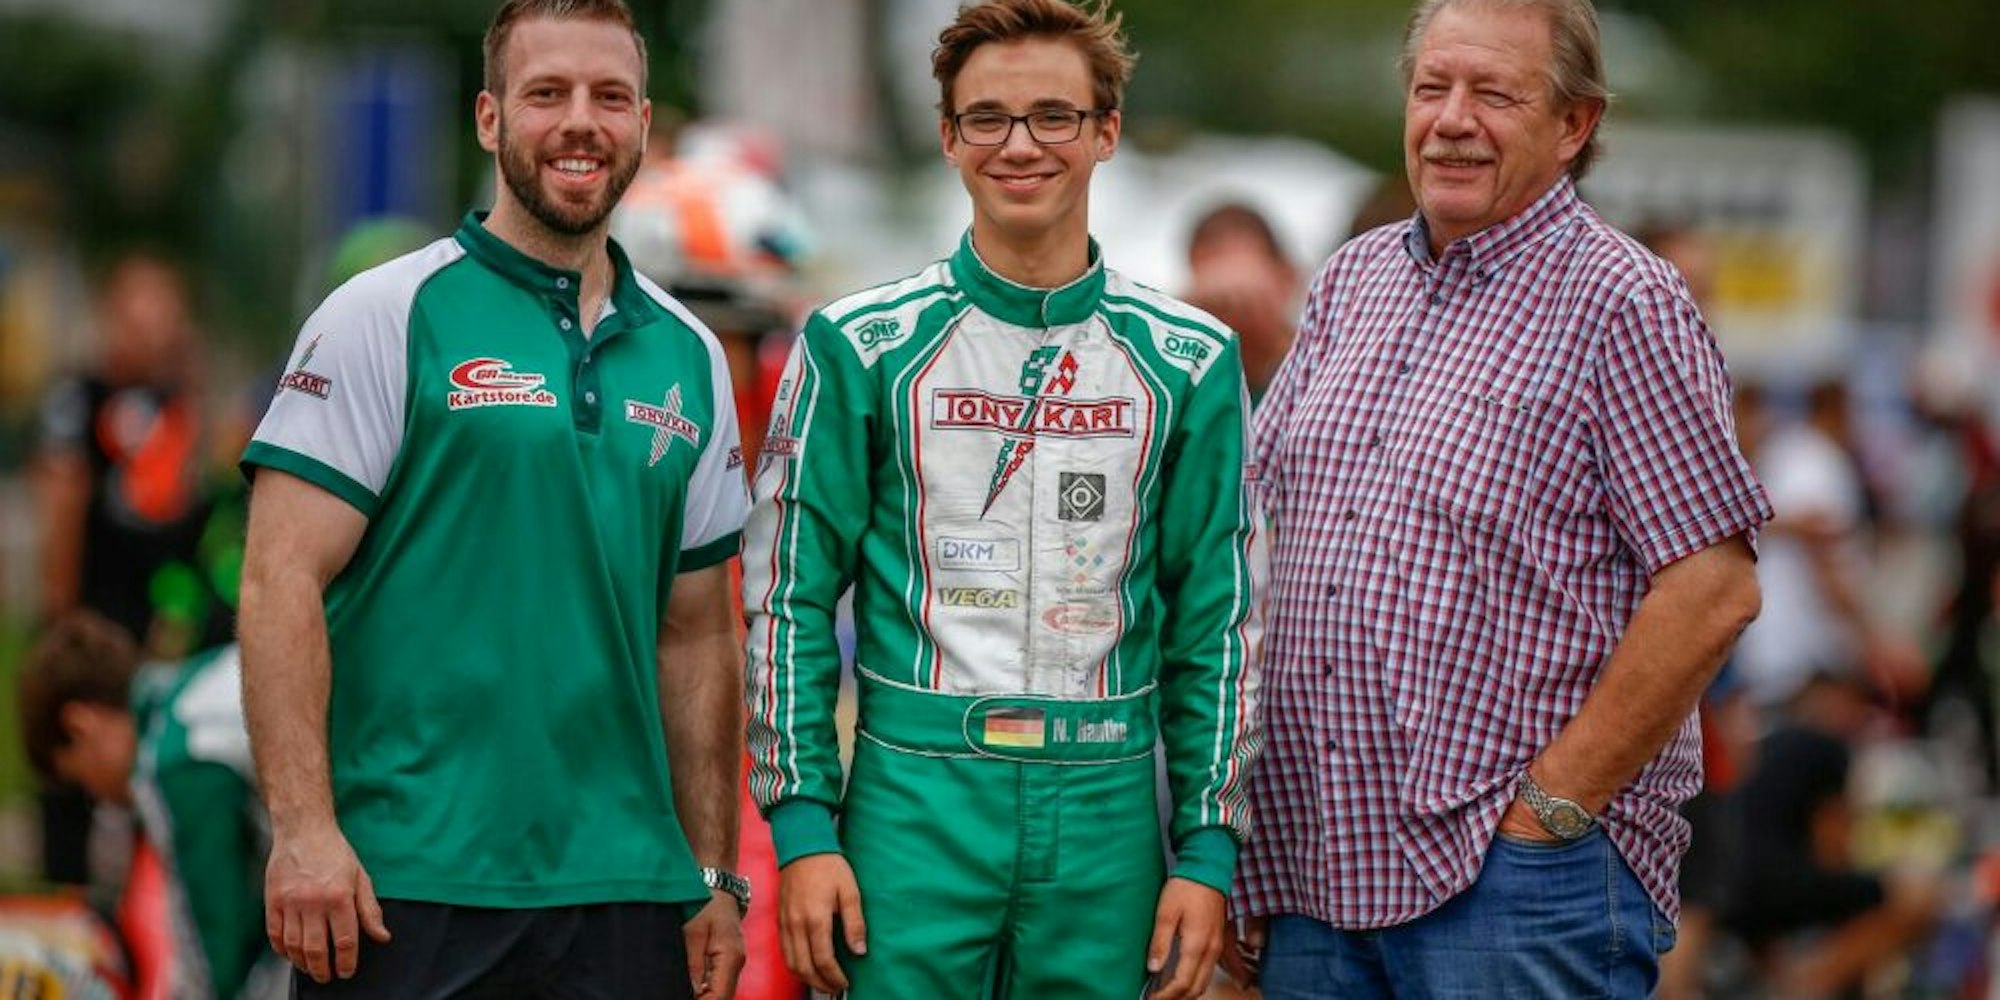 Auf seinem Weg in den Formel-Rennsport wird Nico Hantke (M.) vom Präsidenten des Kartclubs Kerpen-Manheim, Gerd Noack (r.), und dessen Sohn Rene unterstützt.